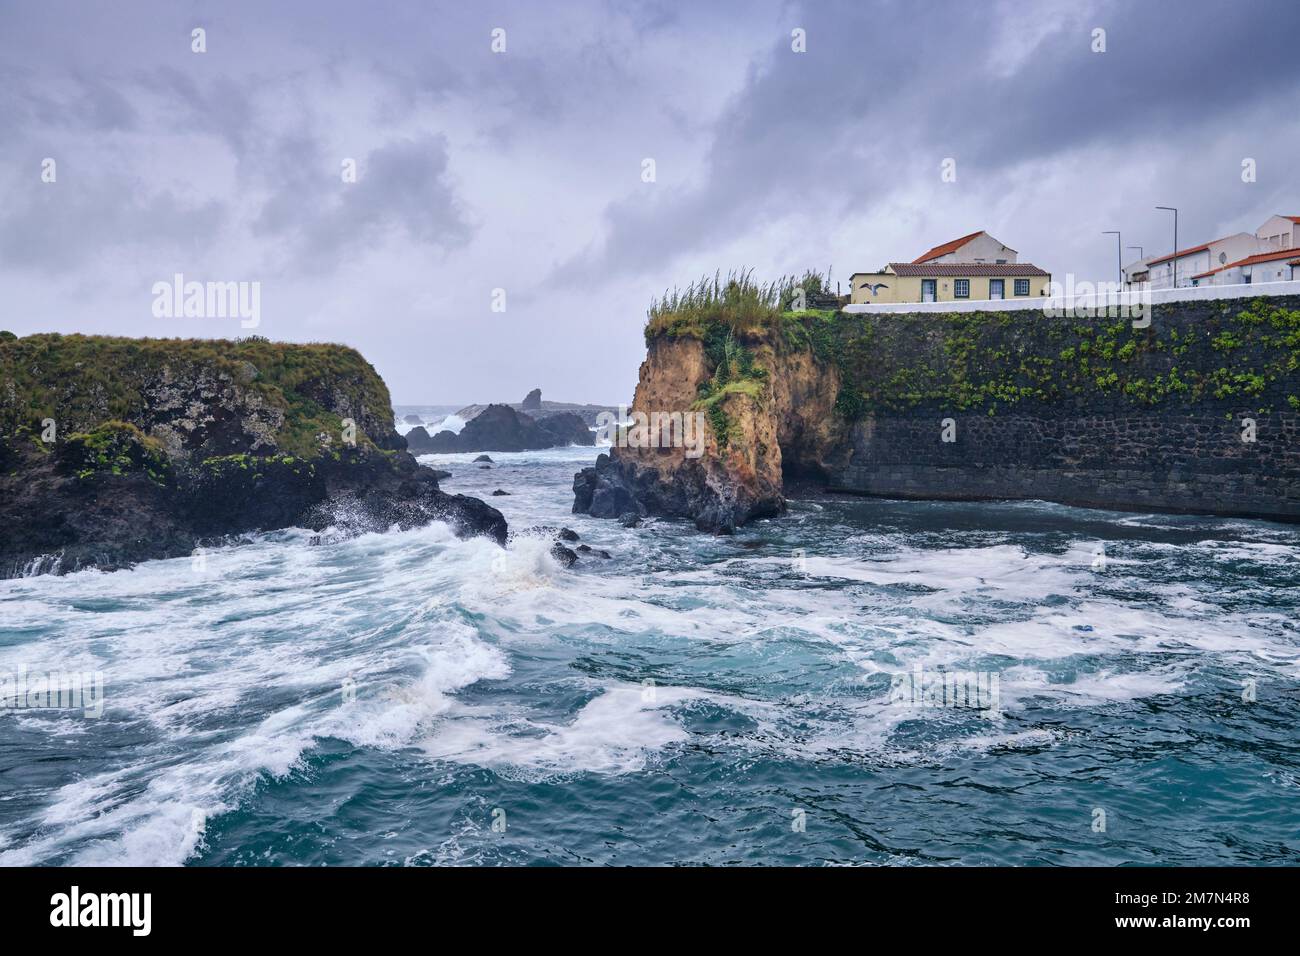 Der alte Hafen von Santa Cruz an einem stürmischen Tag. Flores Island, Azoren Inseln. Portugal Stockfoto